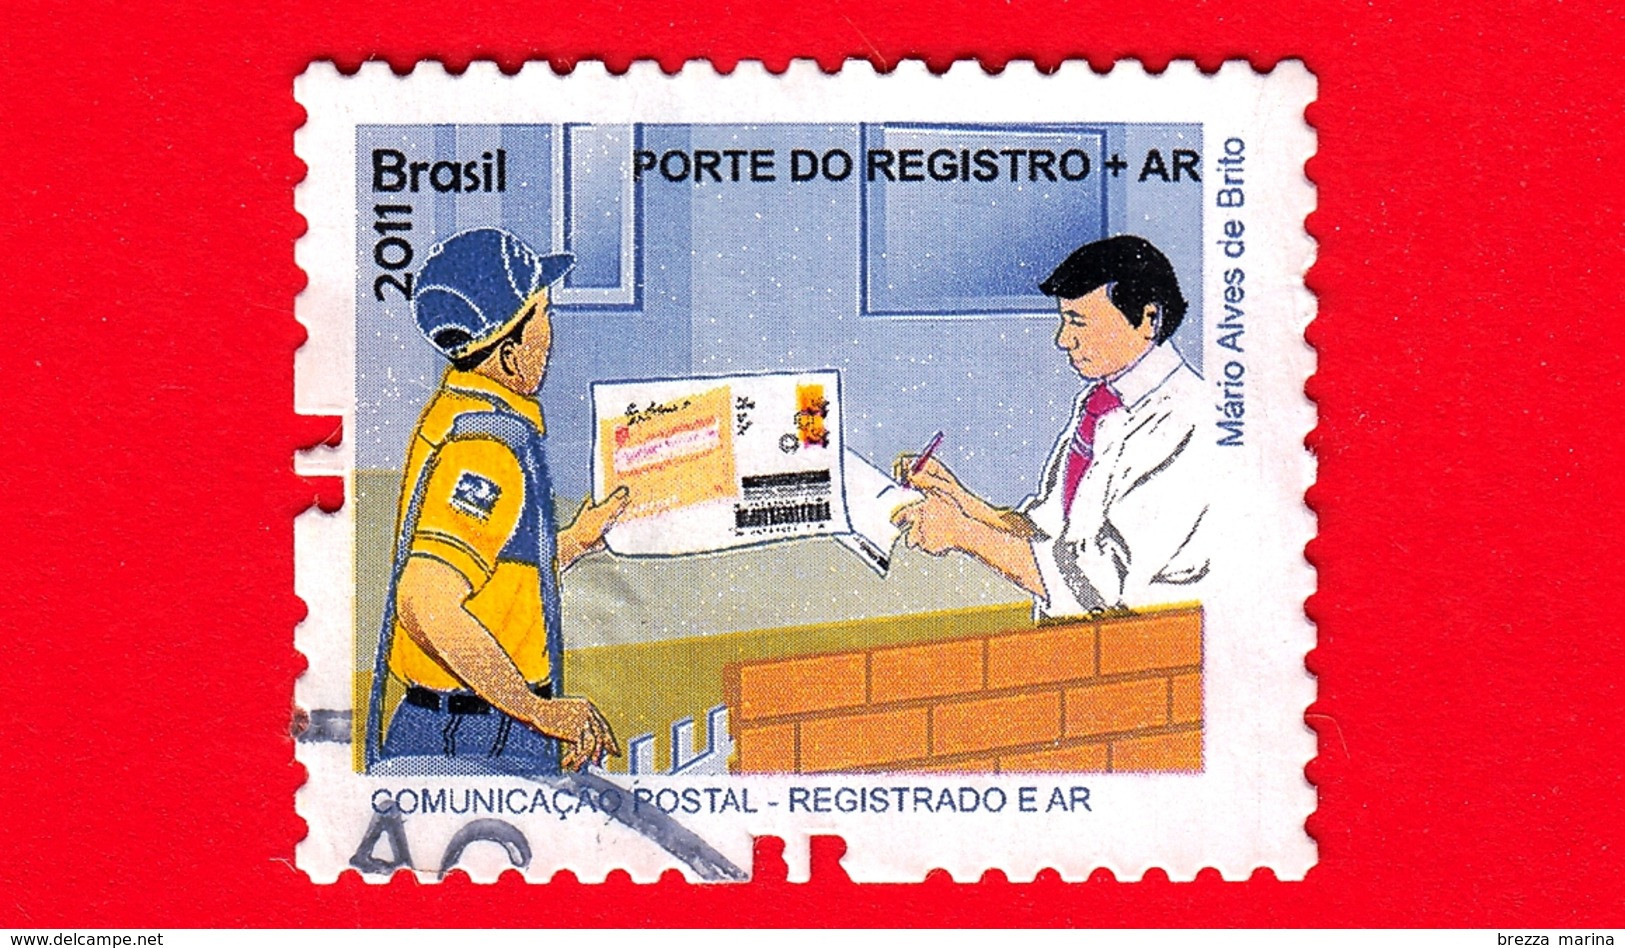 BRASILE - Usato - 2011 - Prodotti E Servizi Postali - Post Office - Porte Do Registro + AR - No Valore Facciale - Usati